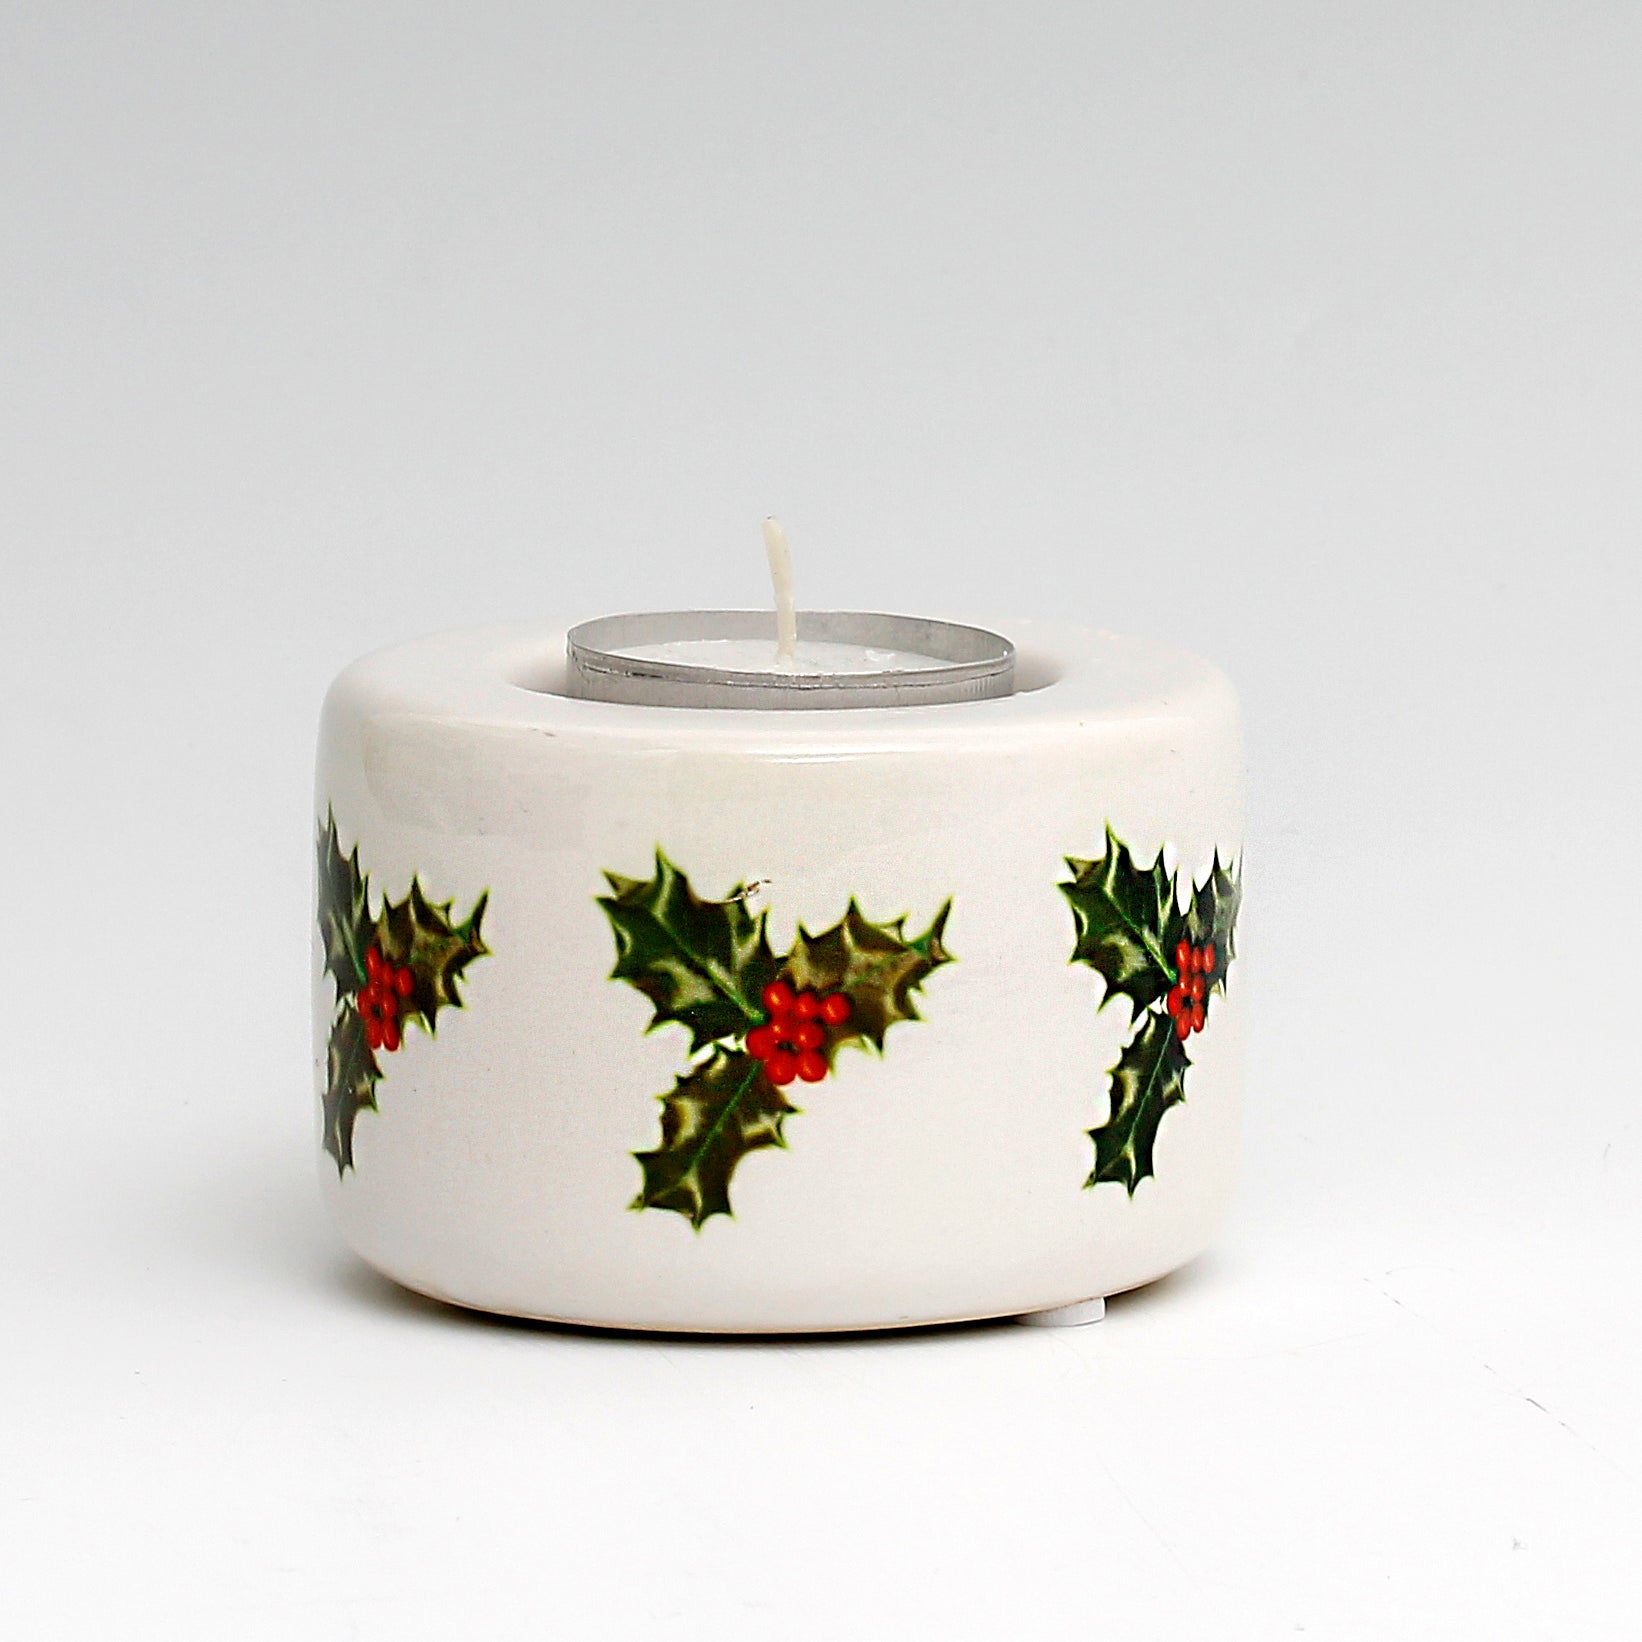 SUBLIMART: Ceramic Tealight in Christmas Design #3